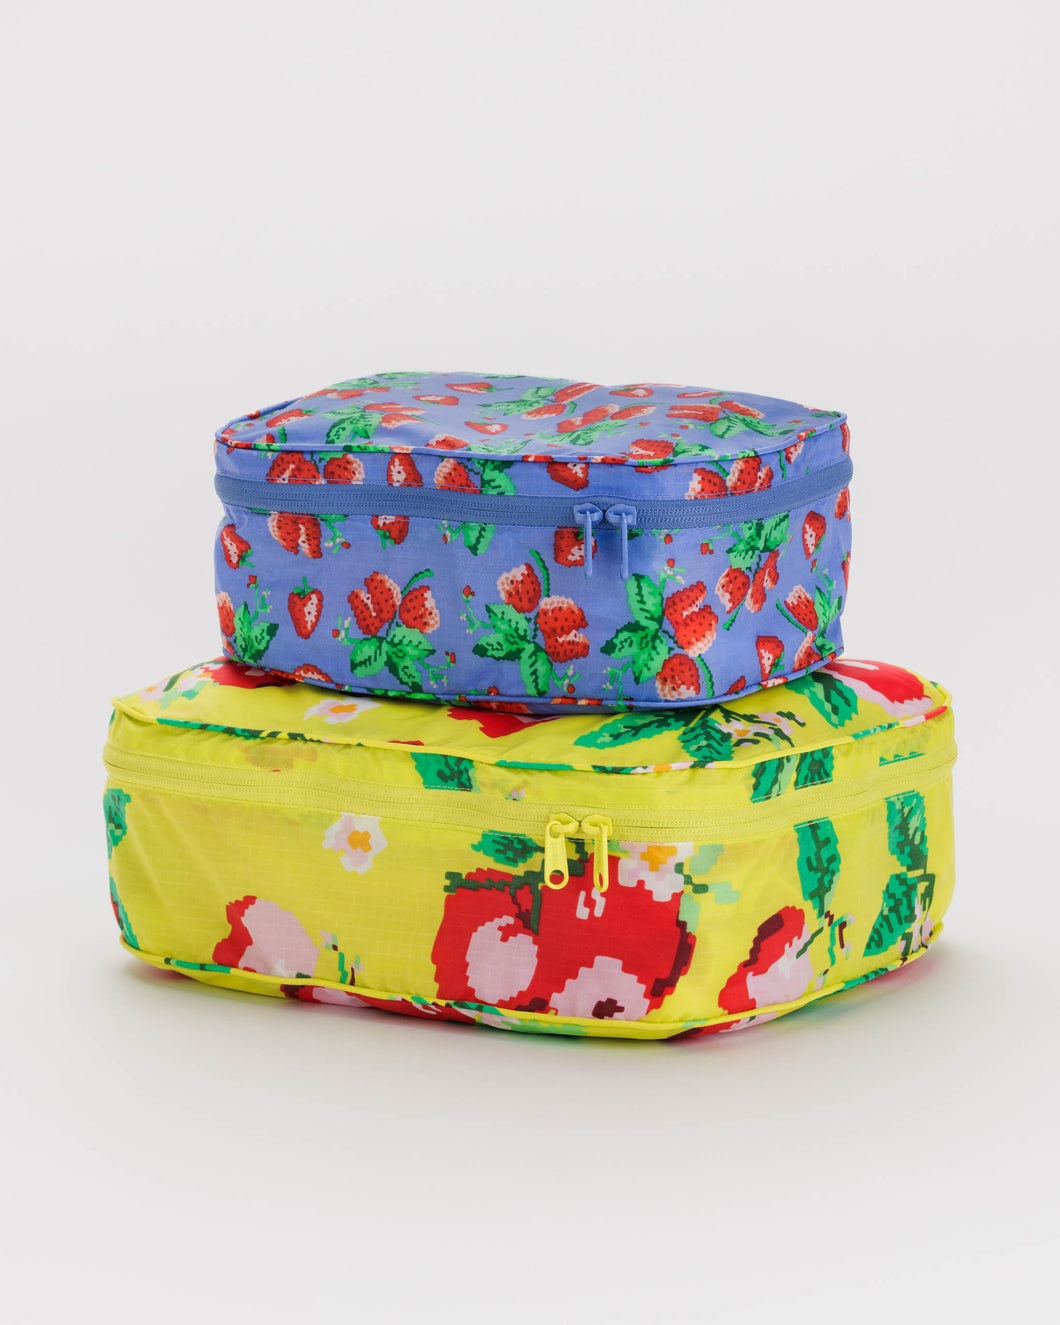 NEW! Packing Cube Set - Needlepoint Fruit